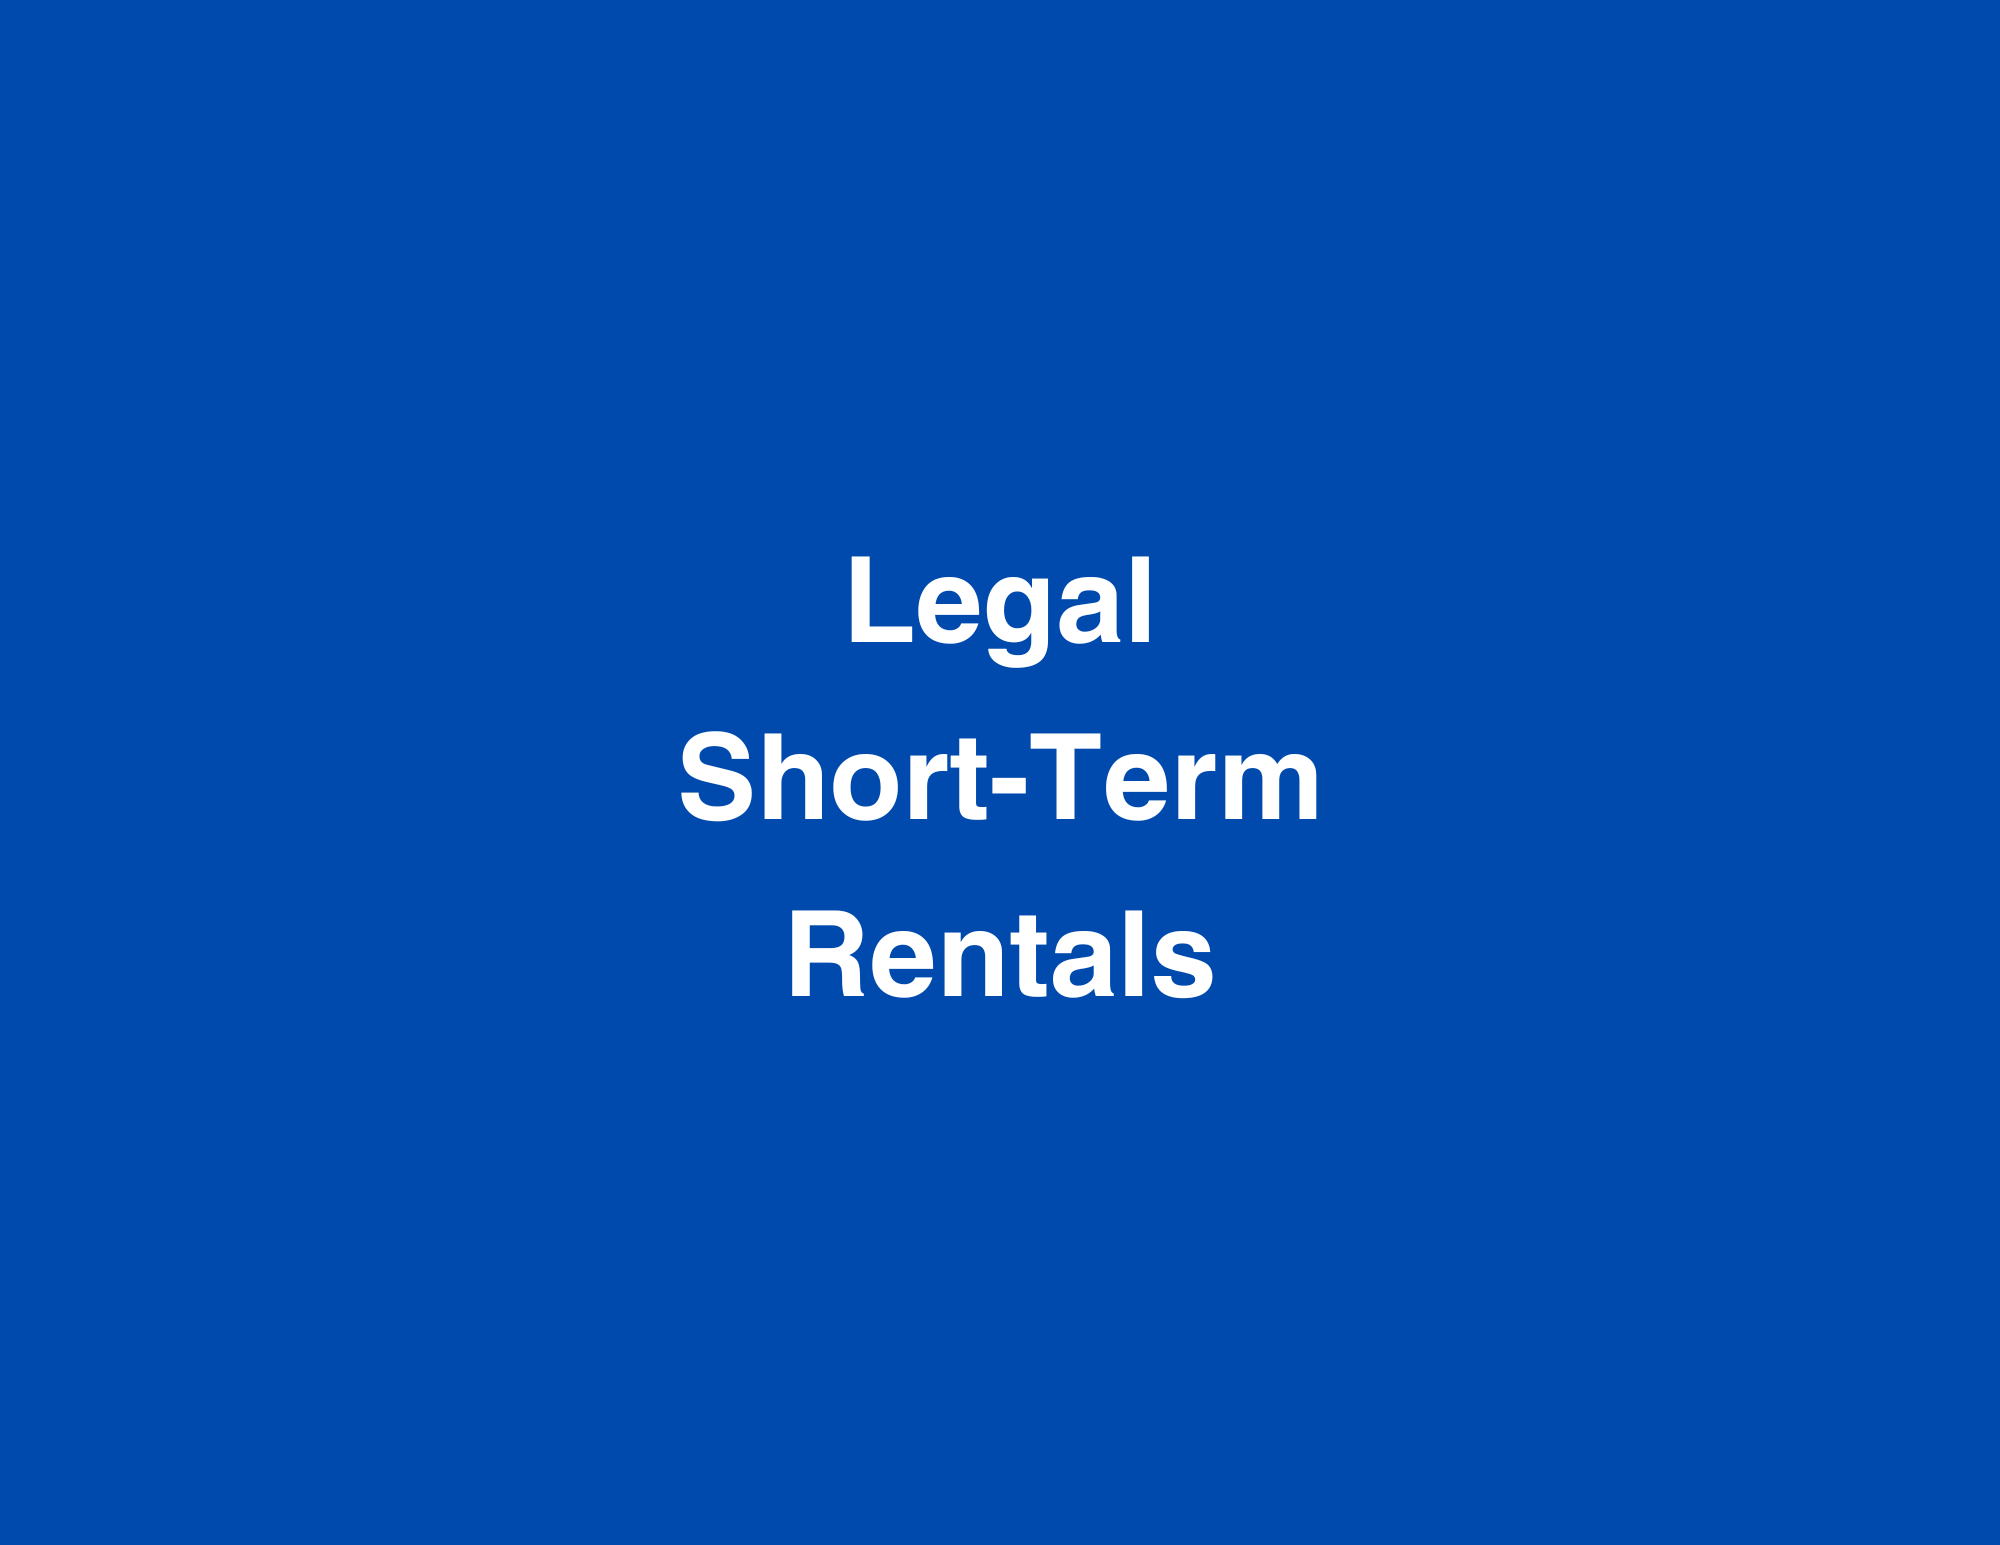 Legal Short-Term Rentals